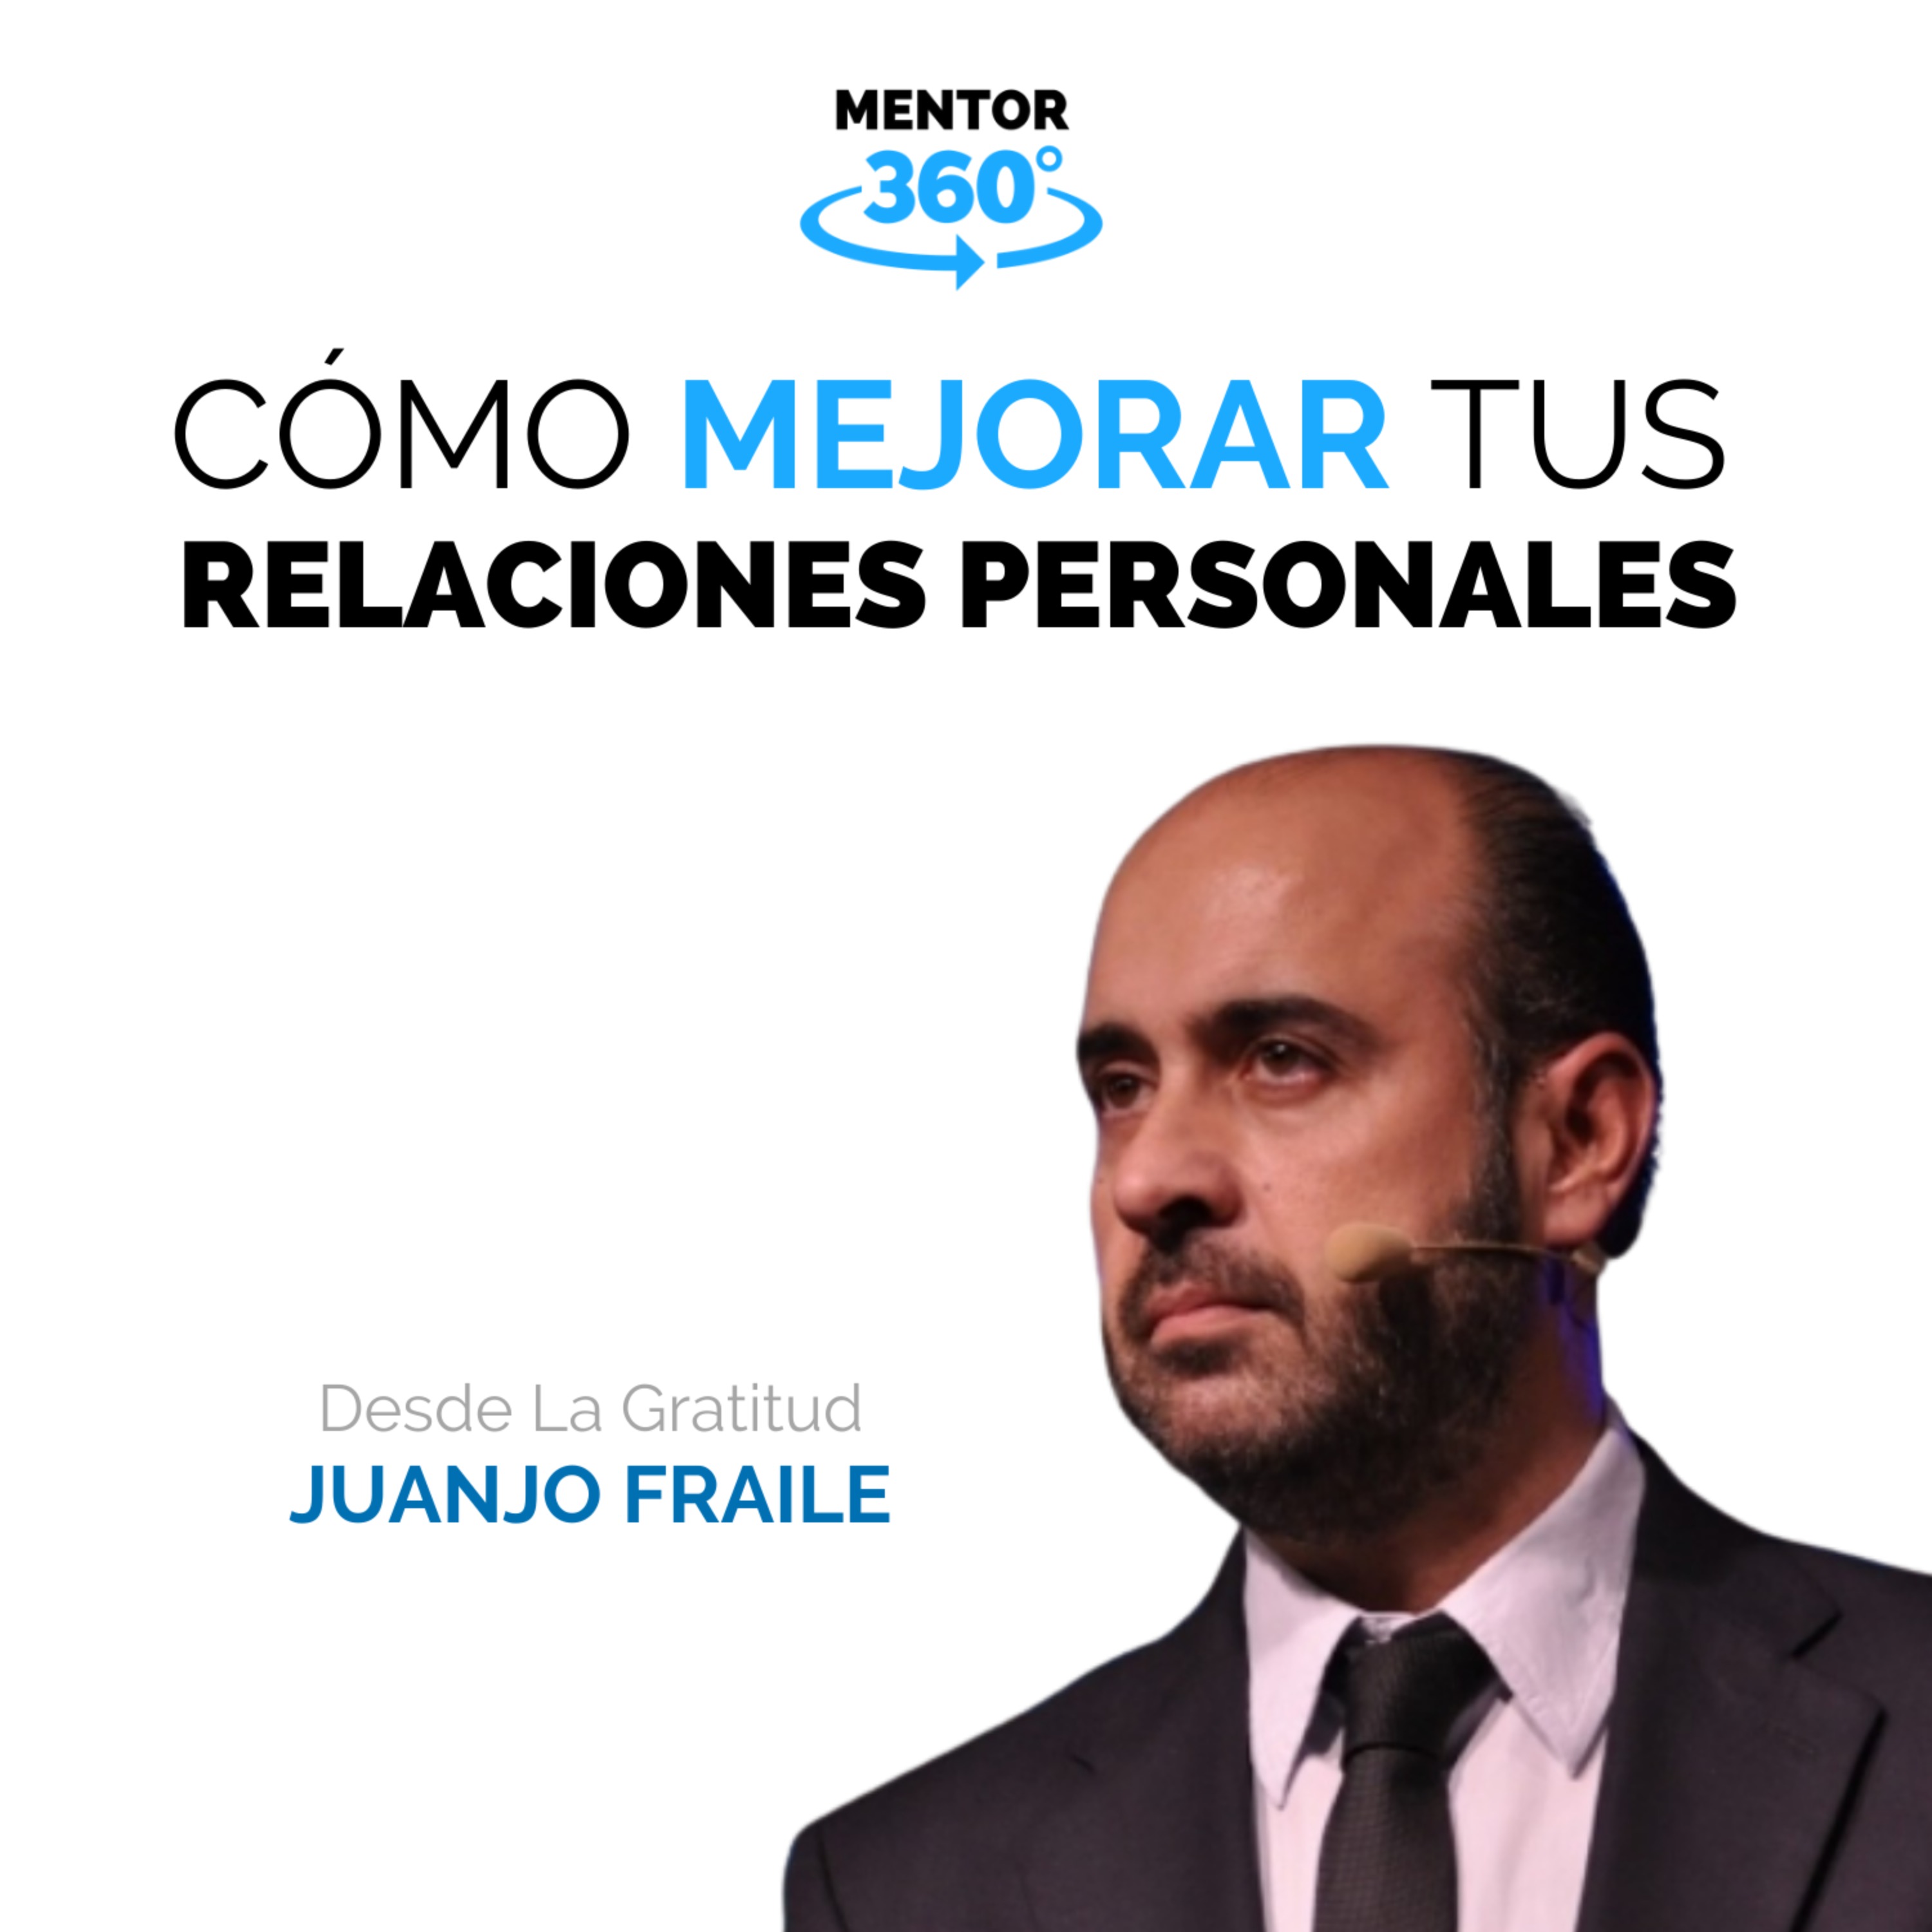 Cómo Mejorar Nuestra Relaciones Personales - Desde La Gratitud - Juanjo Fraile - MENTOR360